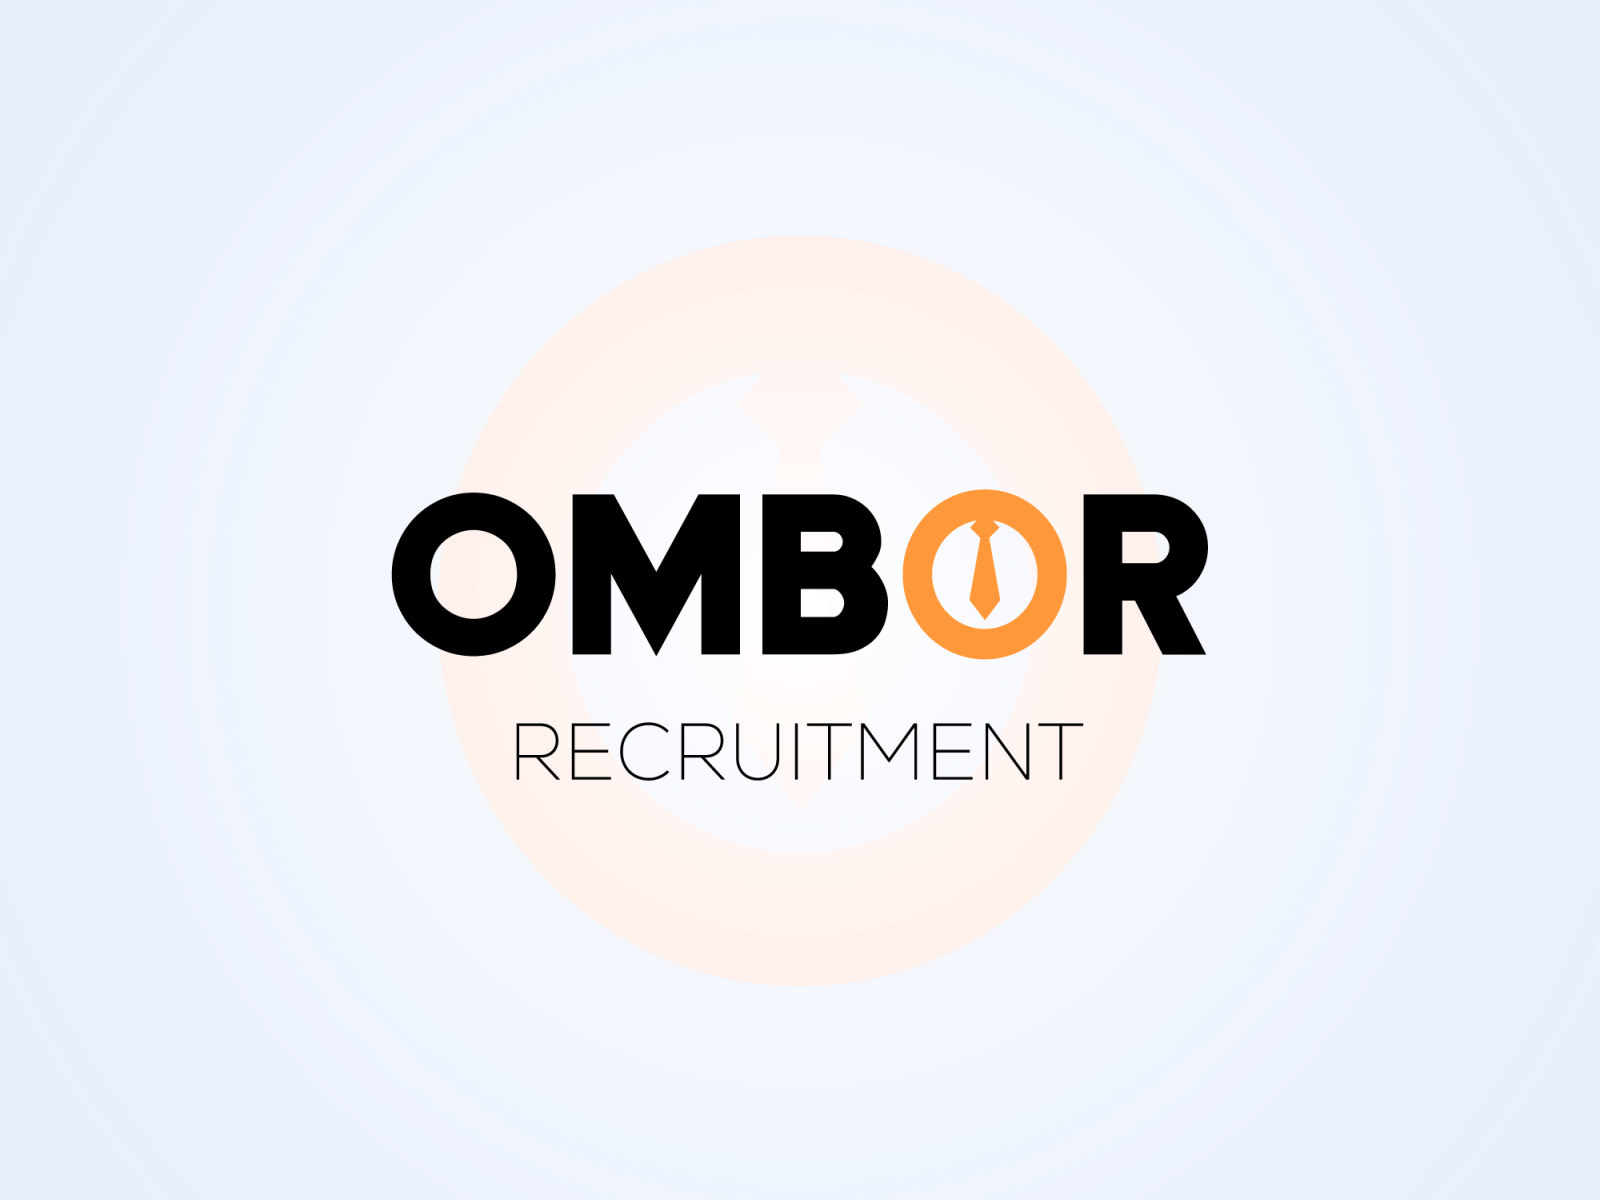 Ombor Recruitment by VectArt on Dribbble